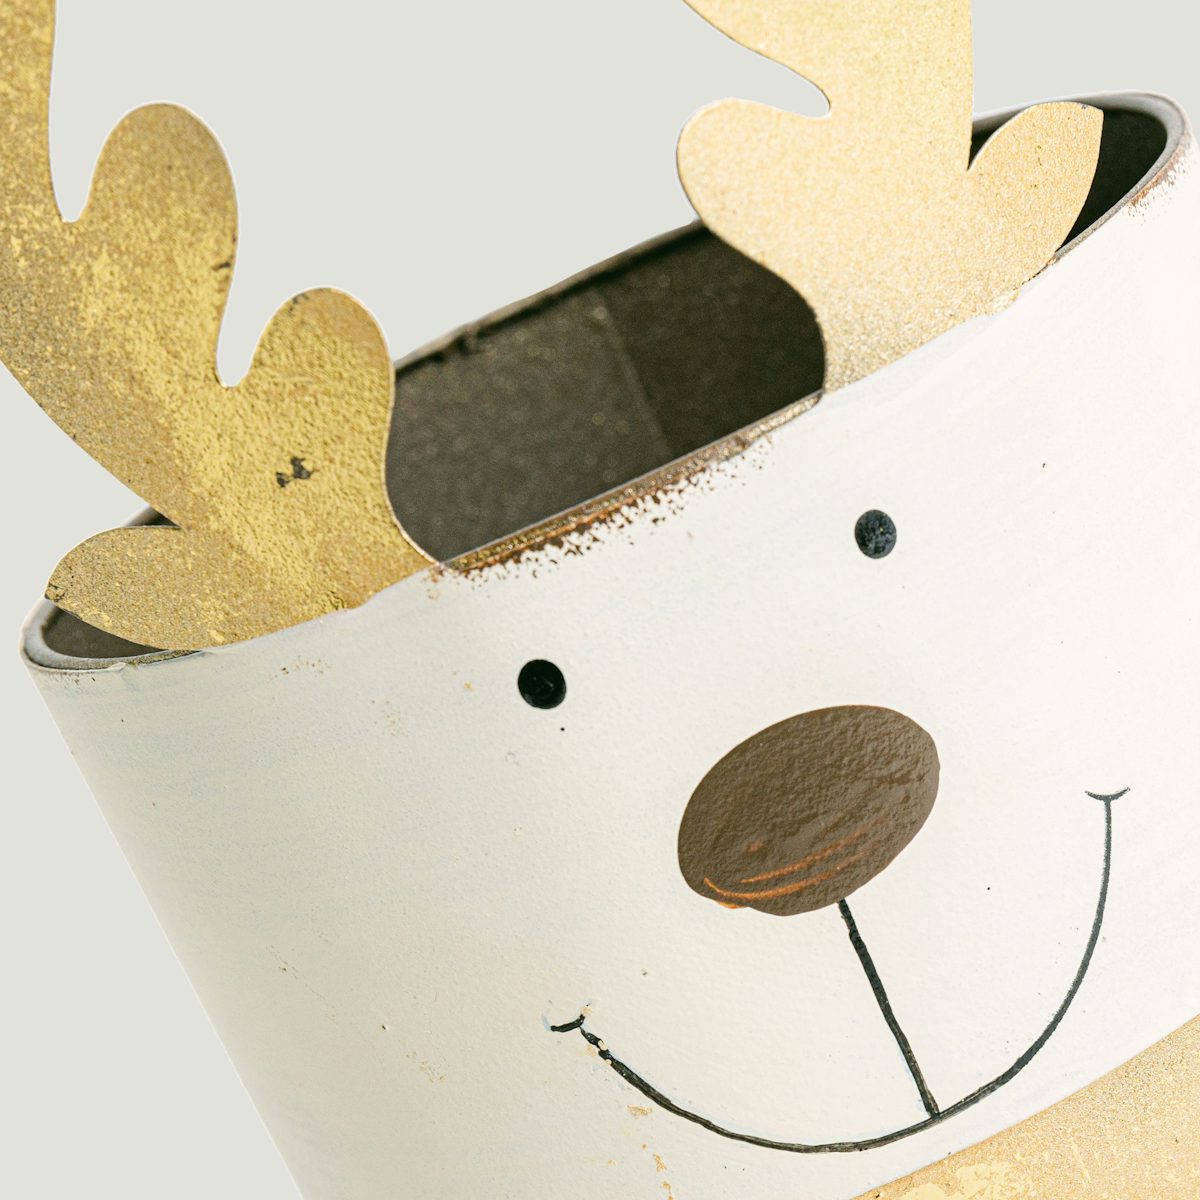 Golden reindeer flower pot - S/11cm